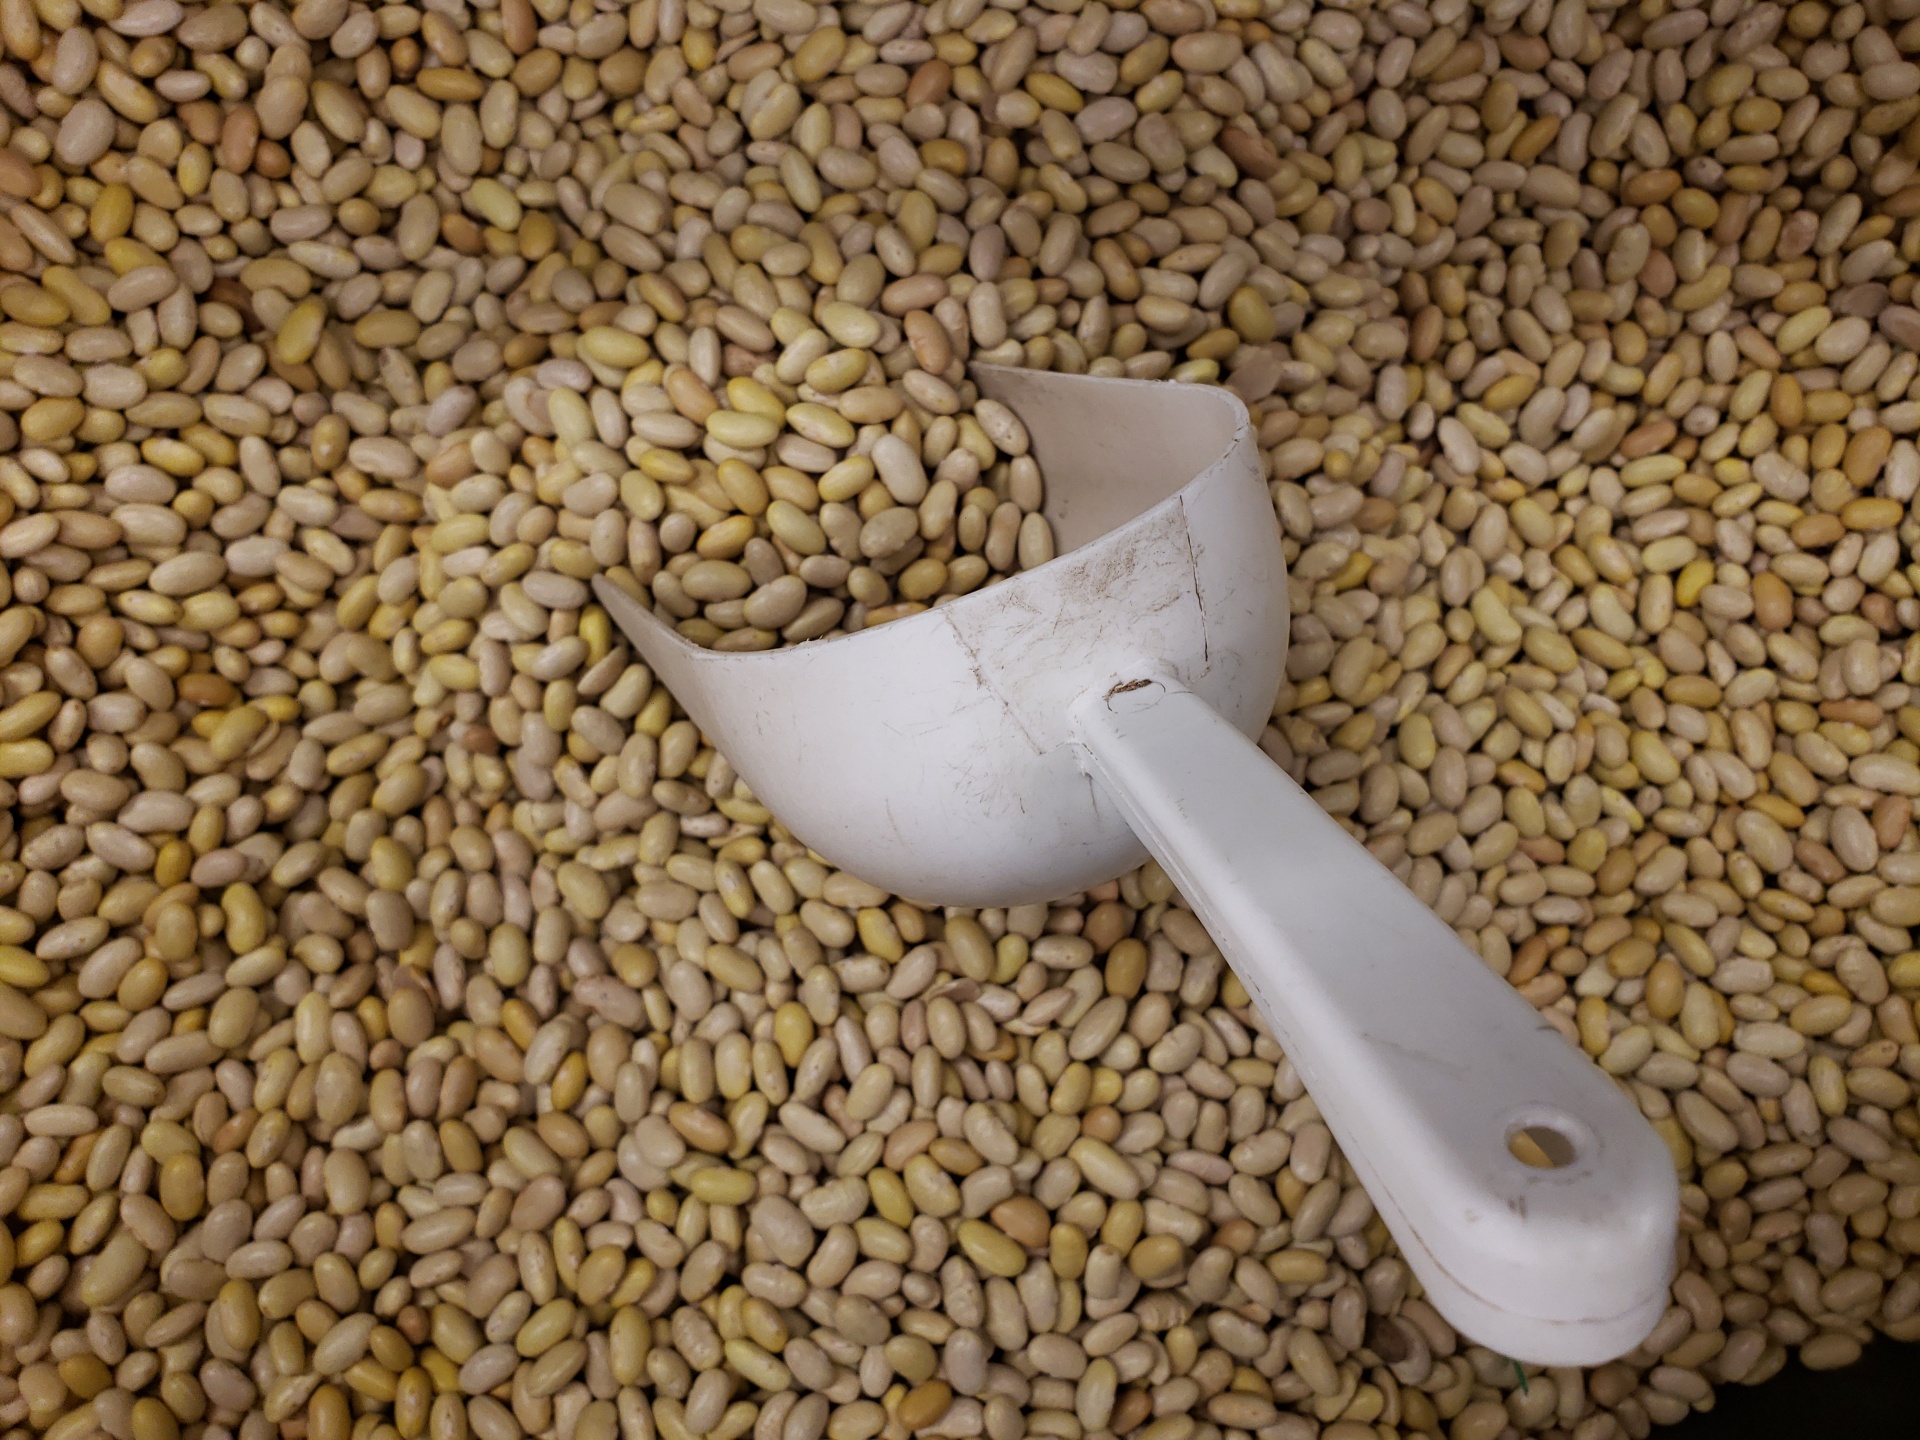 Bulk white dry navy beans in market